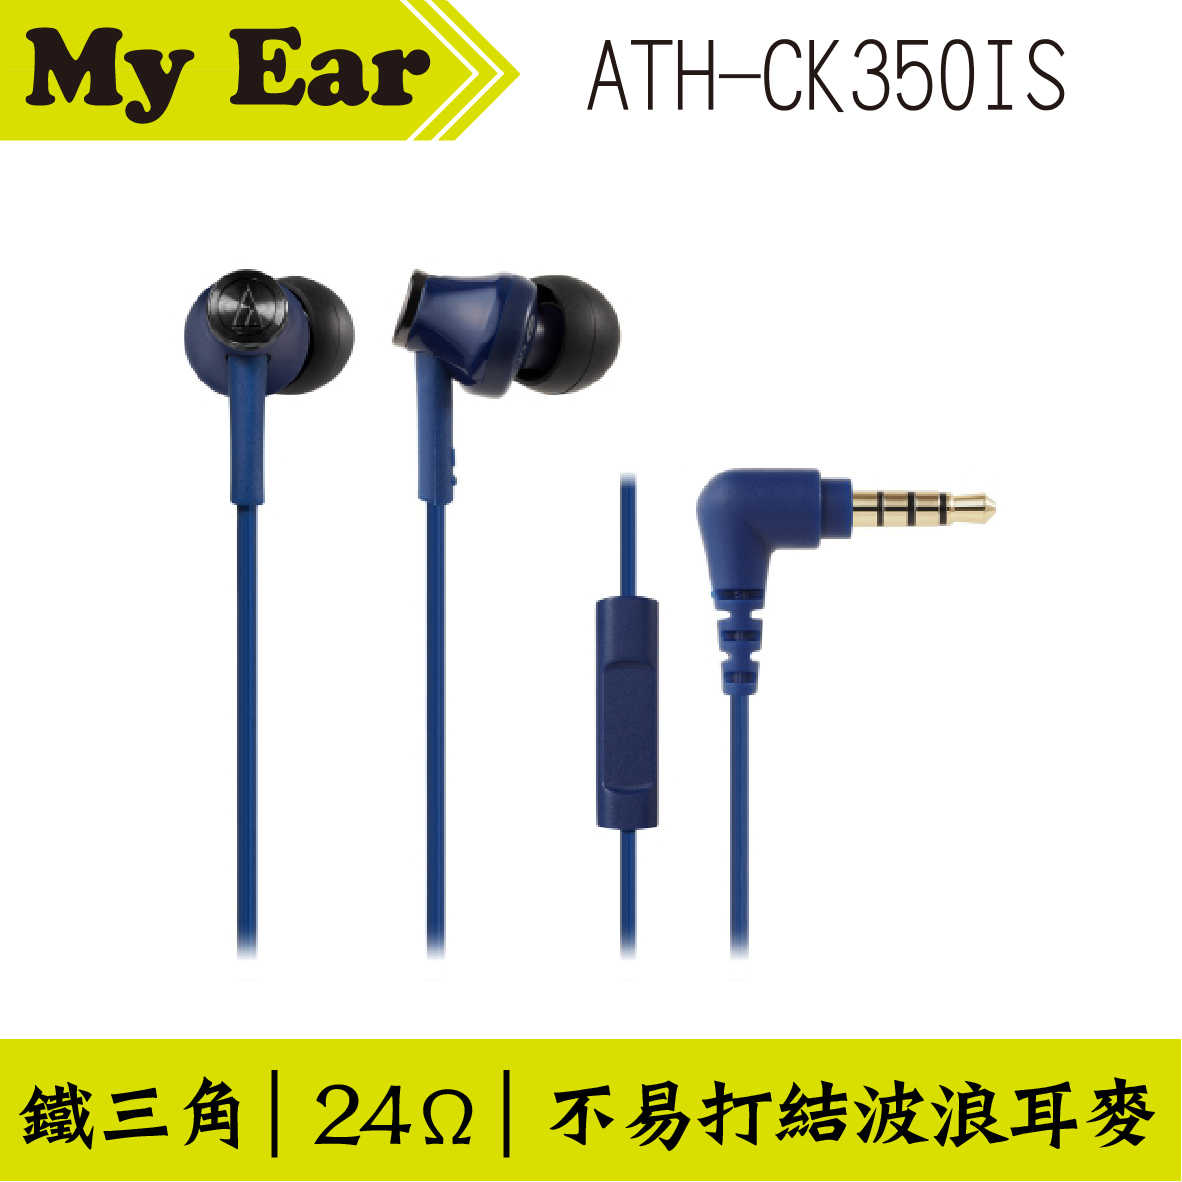 鐵三角 ATH-CK350IS 耳機麥克風 黑色  | My Ear 耳機專門店